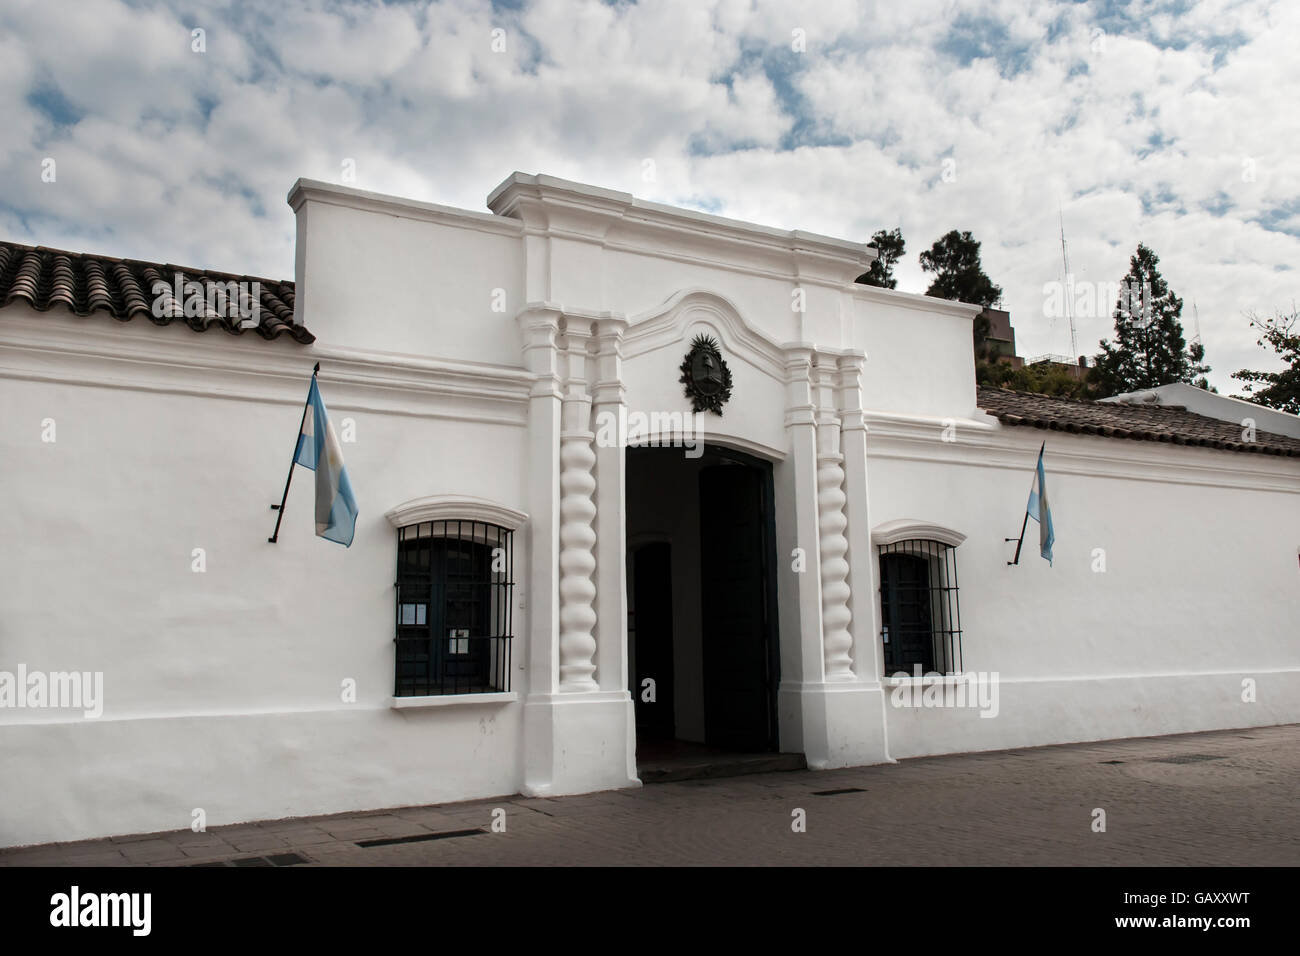 Independence House in Tucuman, Argentinien, der Ort, wo die Erklärung der Unabhängigkeit am 9. Juli 1816 unterzeichnet wurde Stockfoto